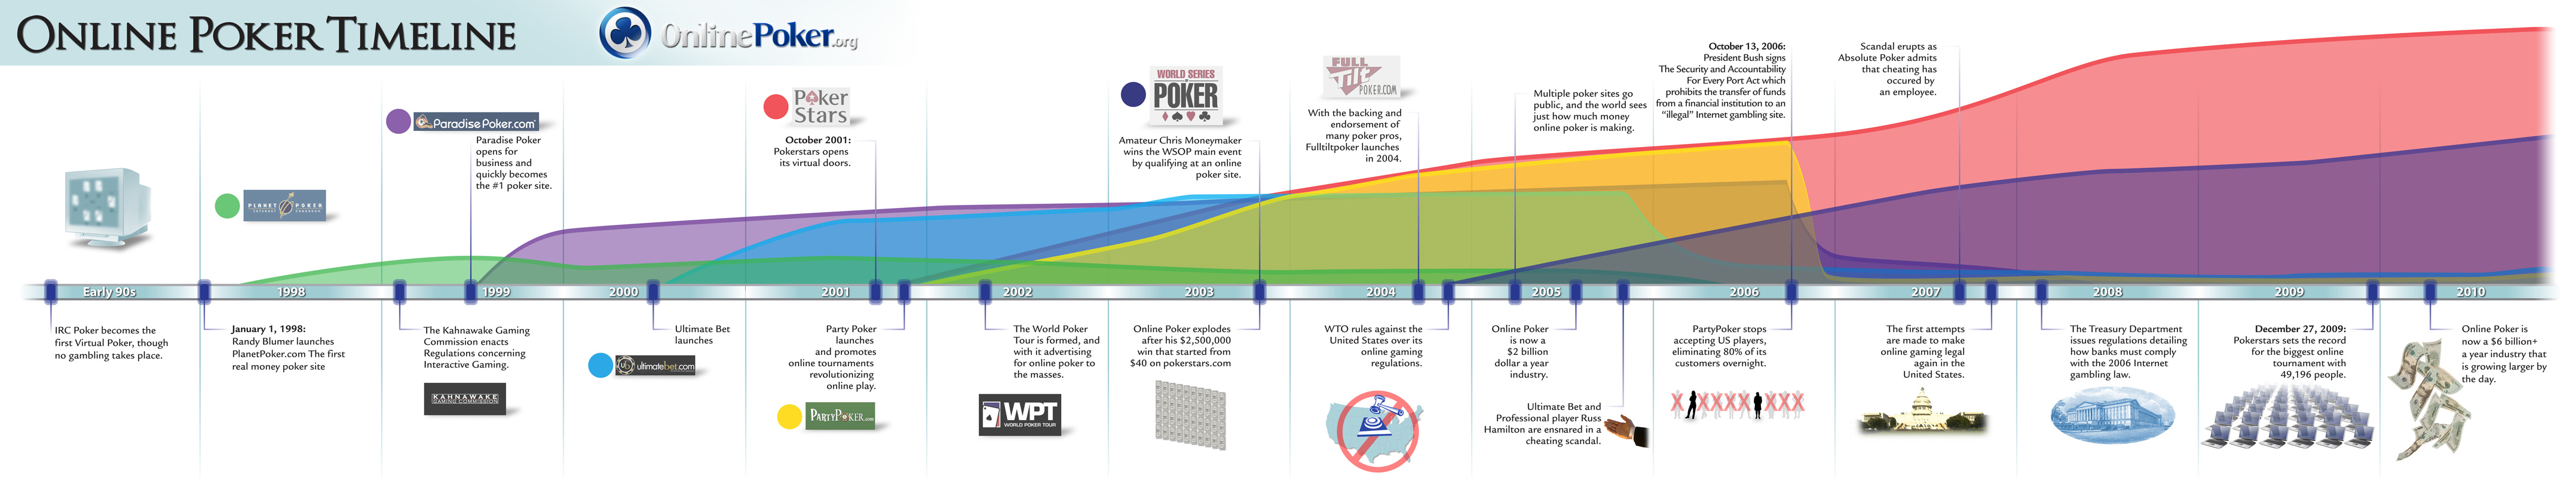 Poker_Timeline.jpg